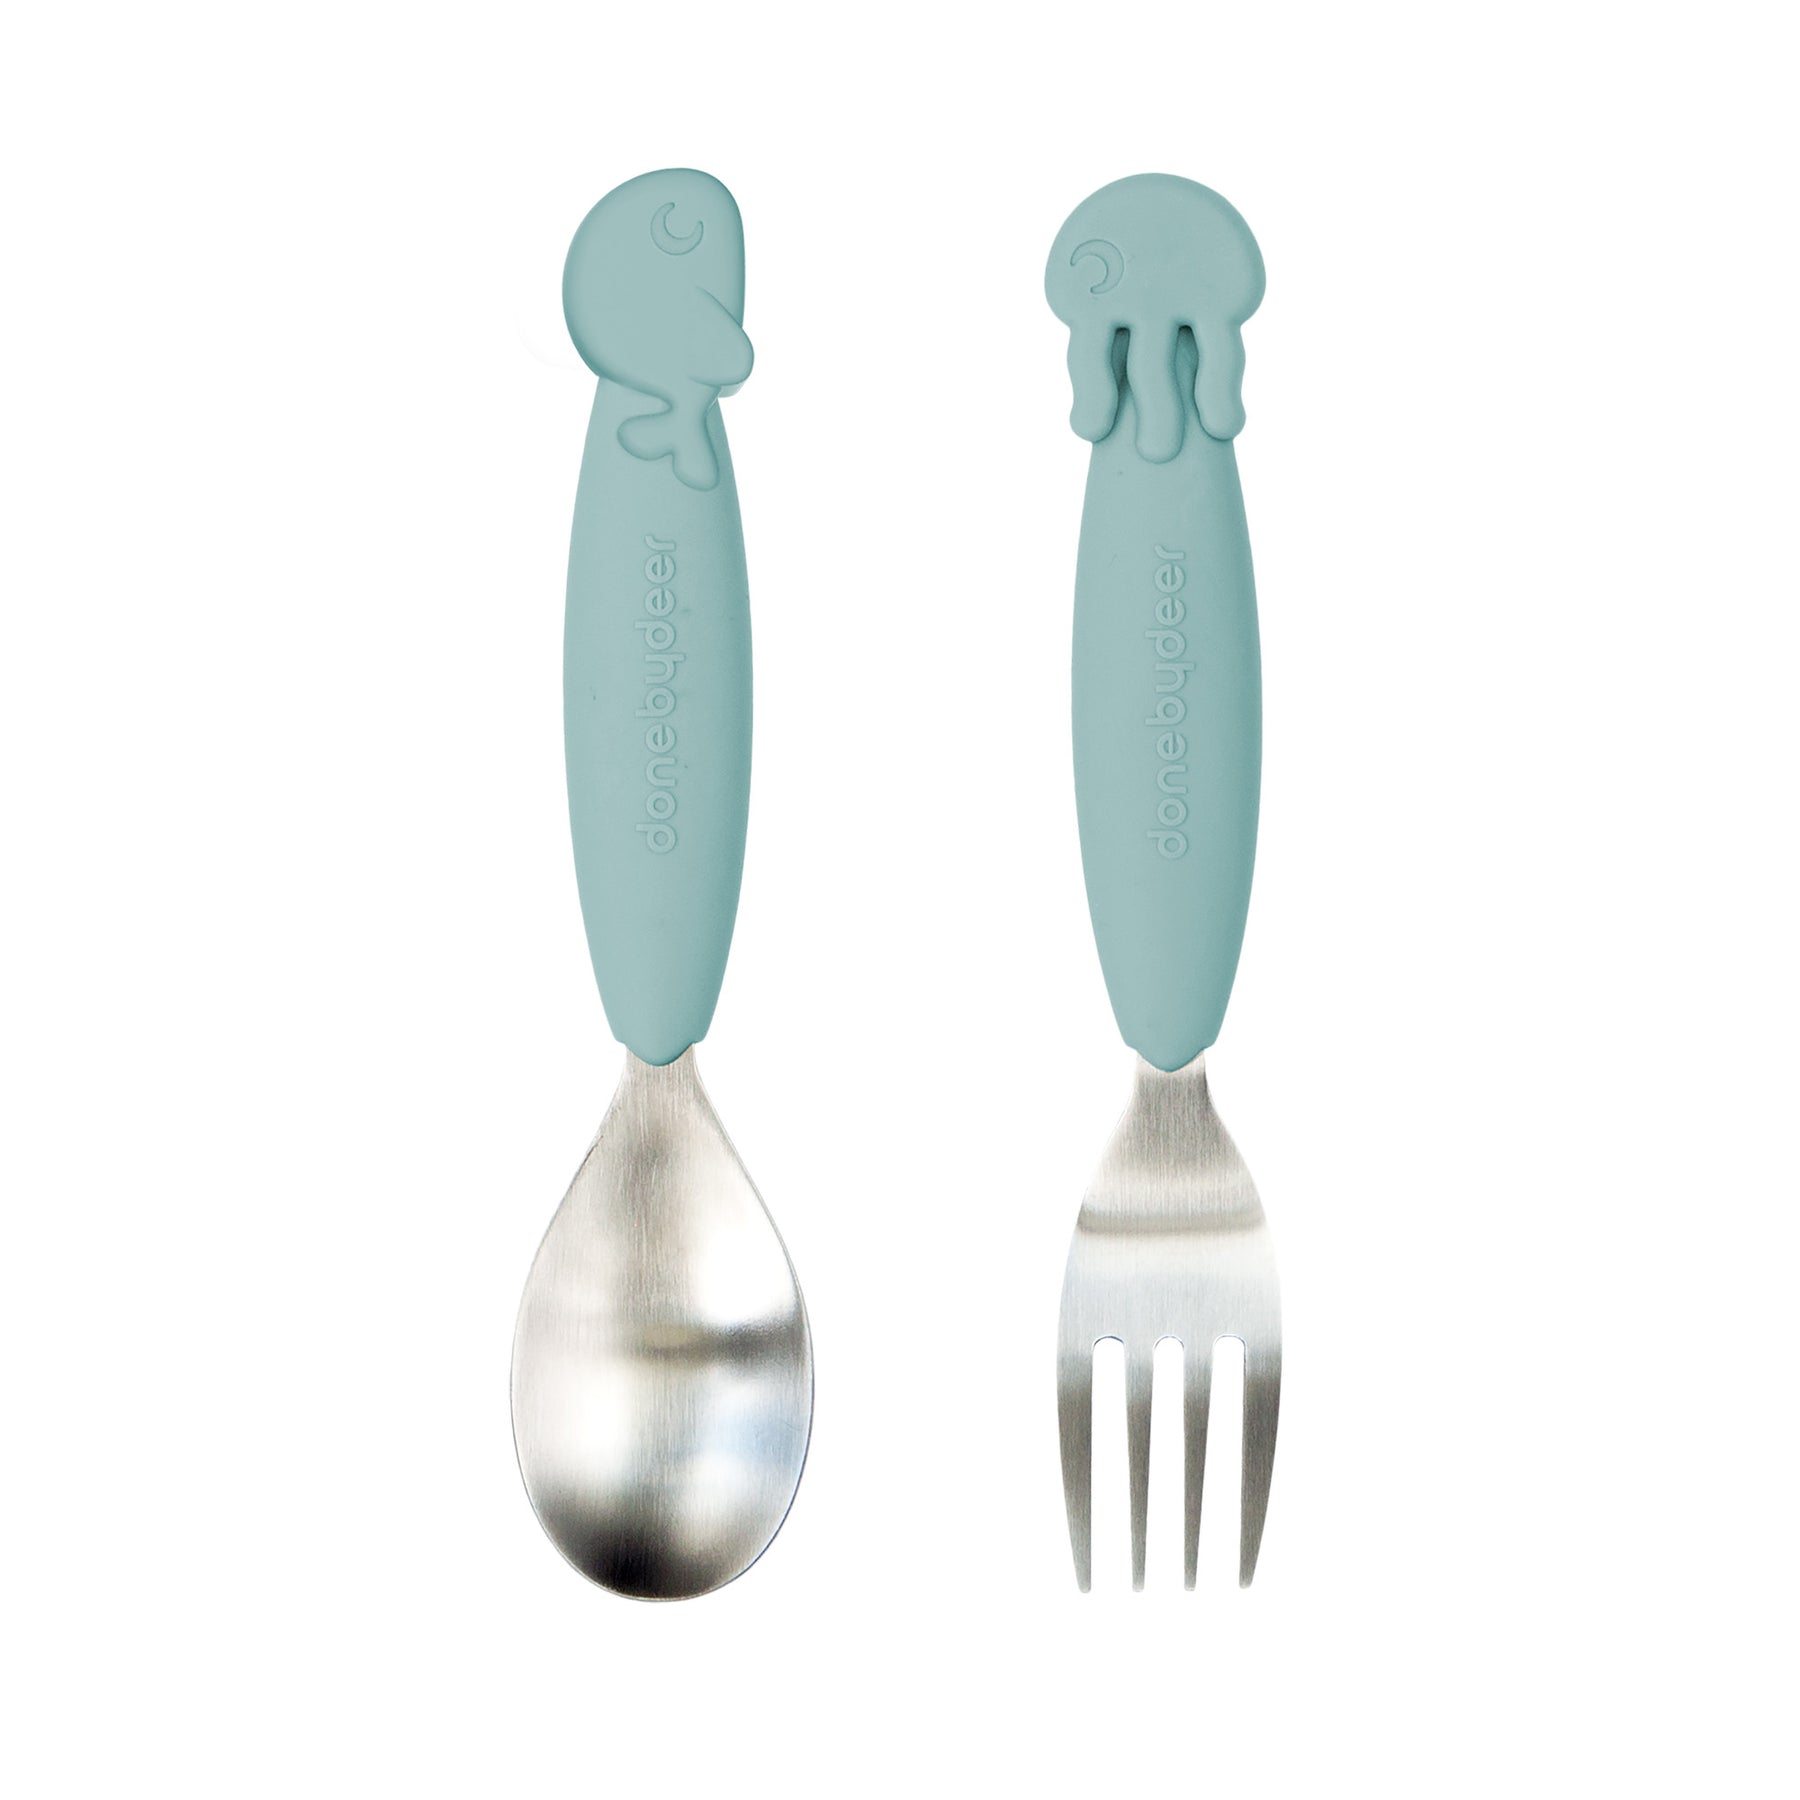 YummyPlus spoon & fork set - Sea friends - Blue - Front